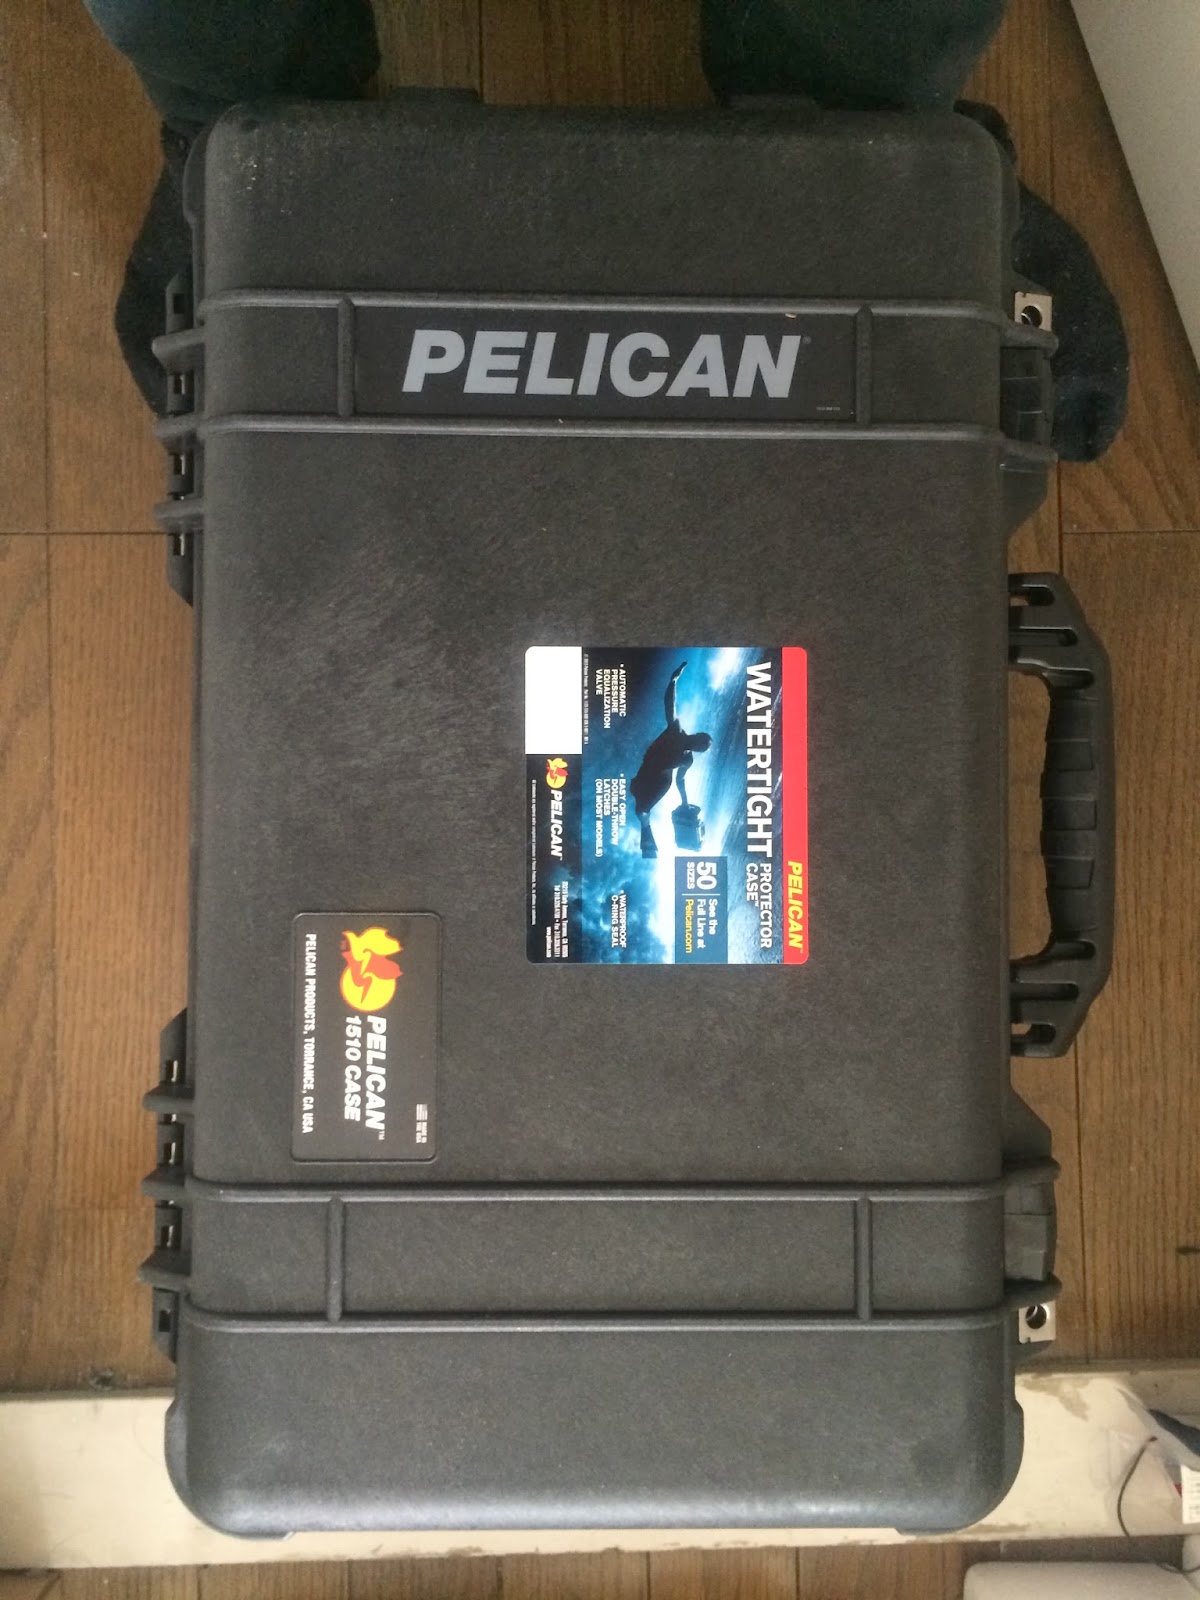 ちょっとSE的な生活を送る人のブログ: ペリカンケース1510にオーガナイザー装着 [pelican PC-1510]